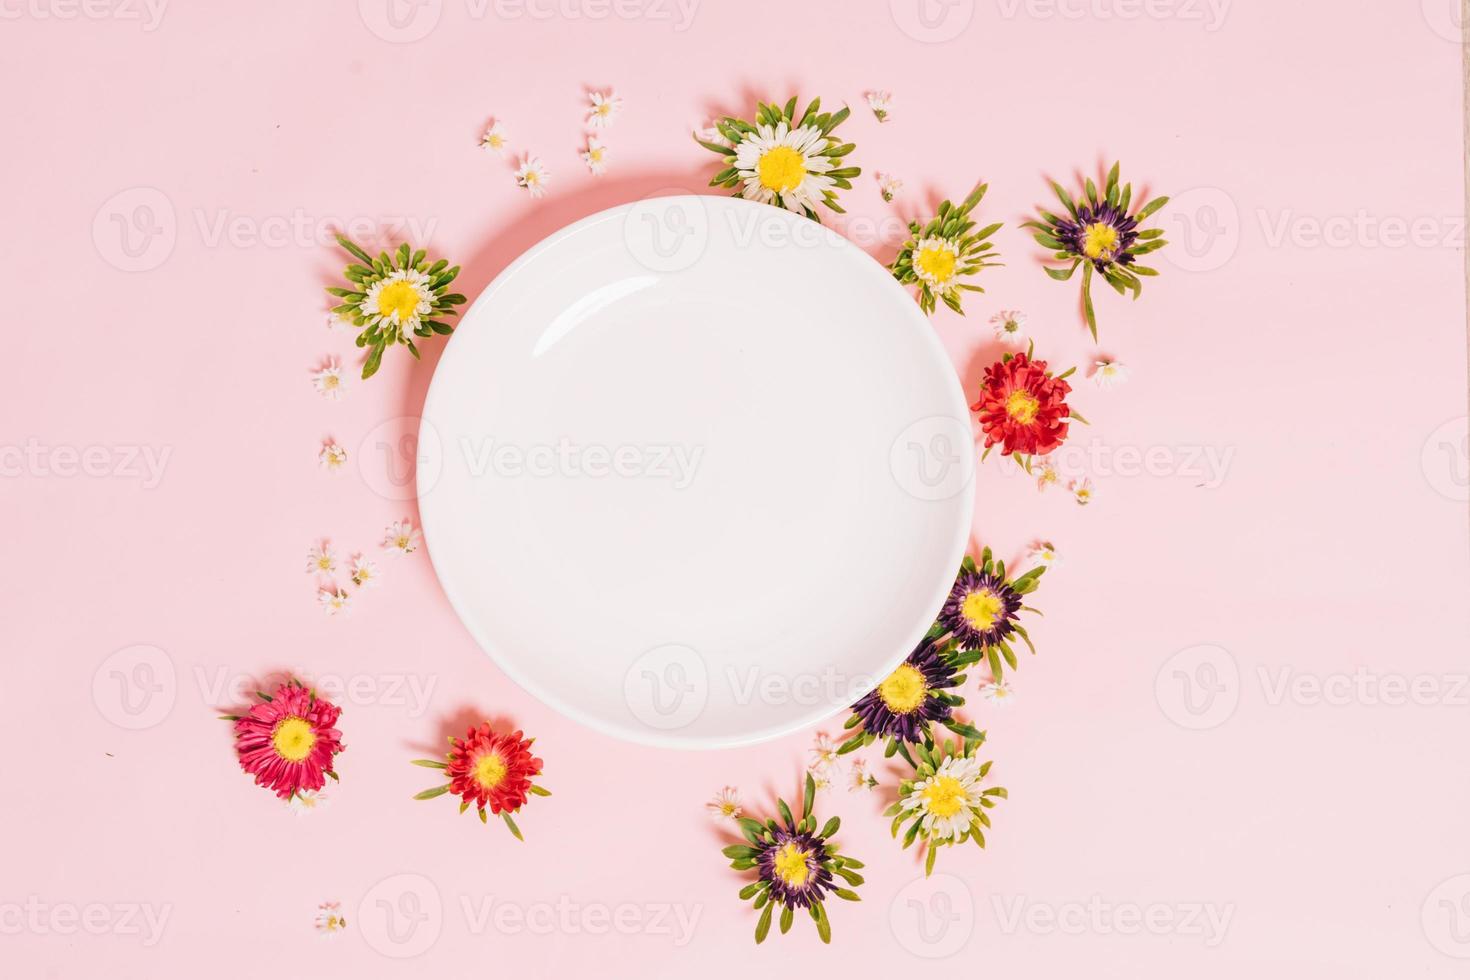 la plaque blanche ronde est placée sur un fond rose avec des fleurs autour photo